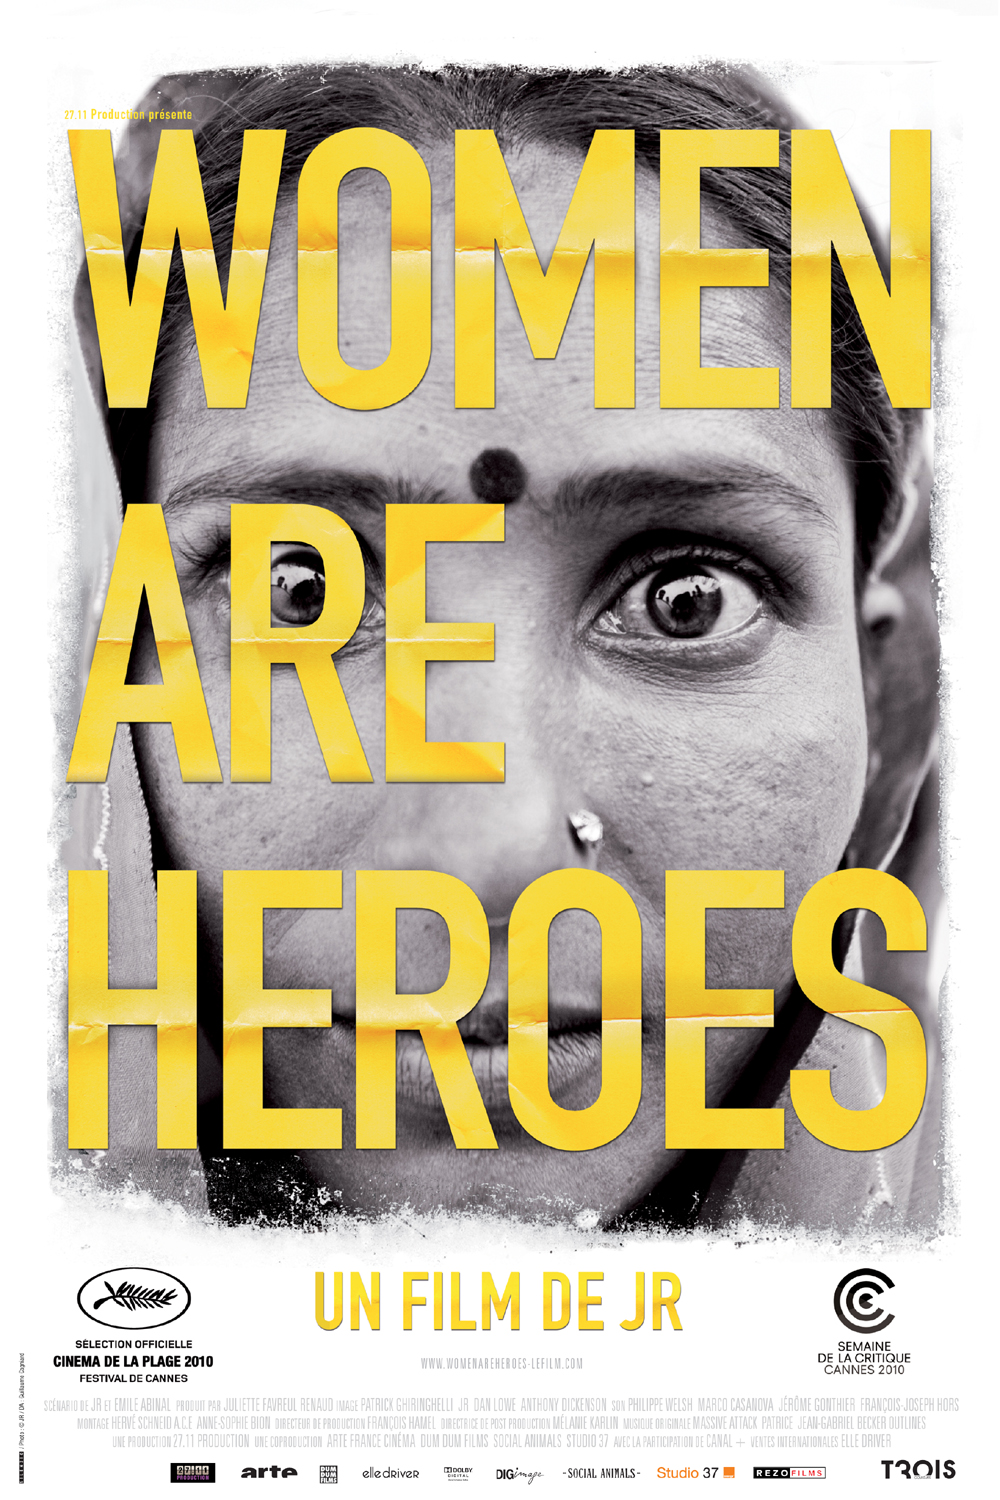 2008 «Women are heroes» Portraits de femmes vivant dans des zones conflictuelles, violentes, violentes zone de guerre.